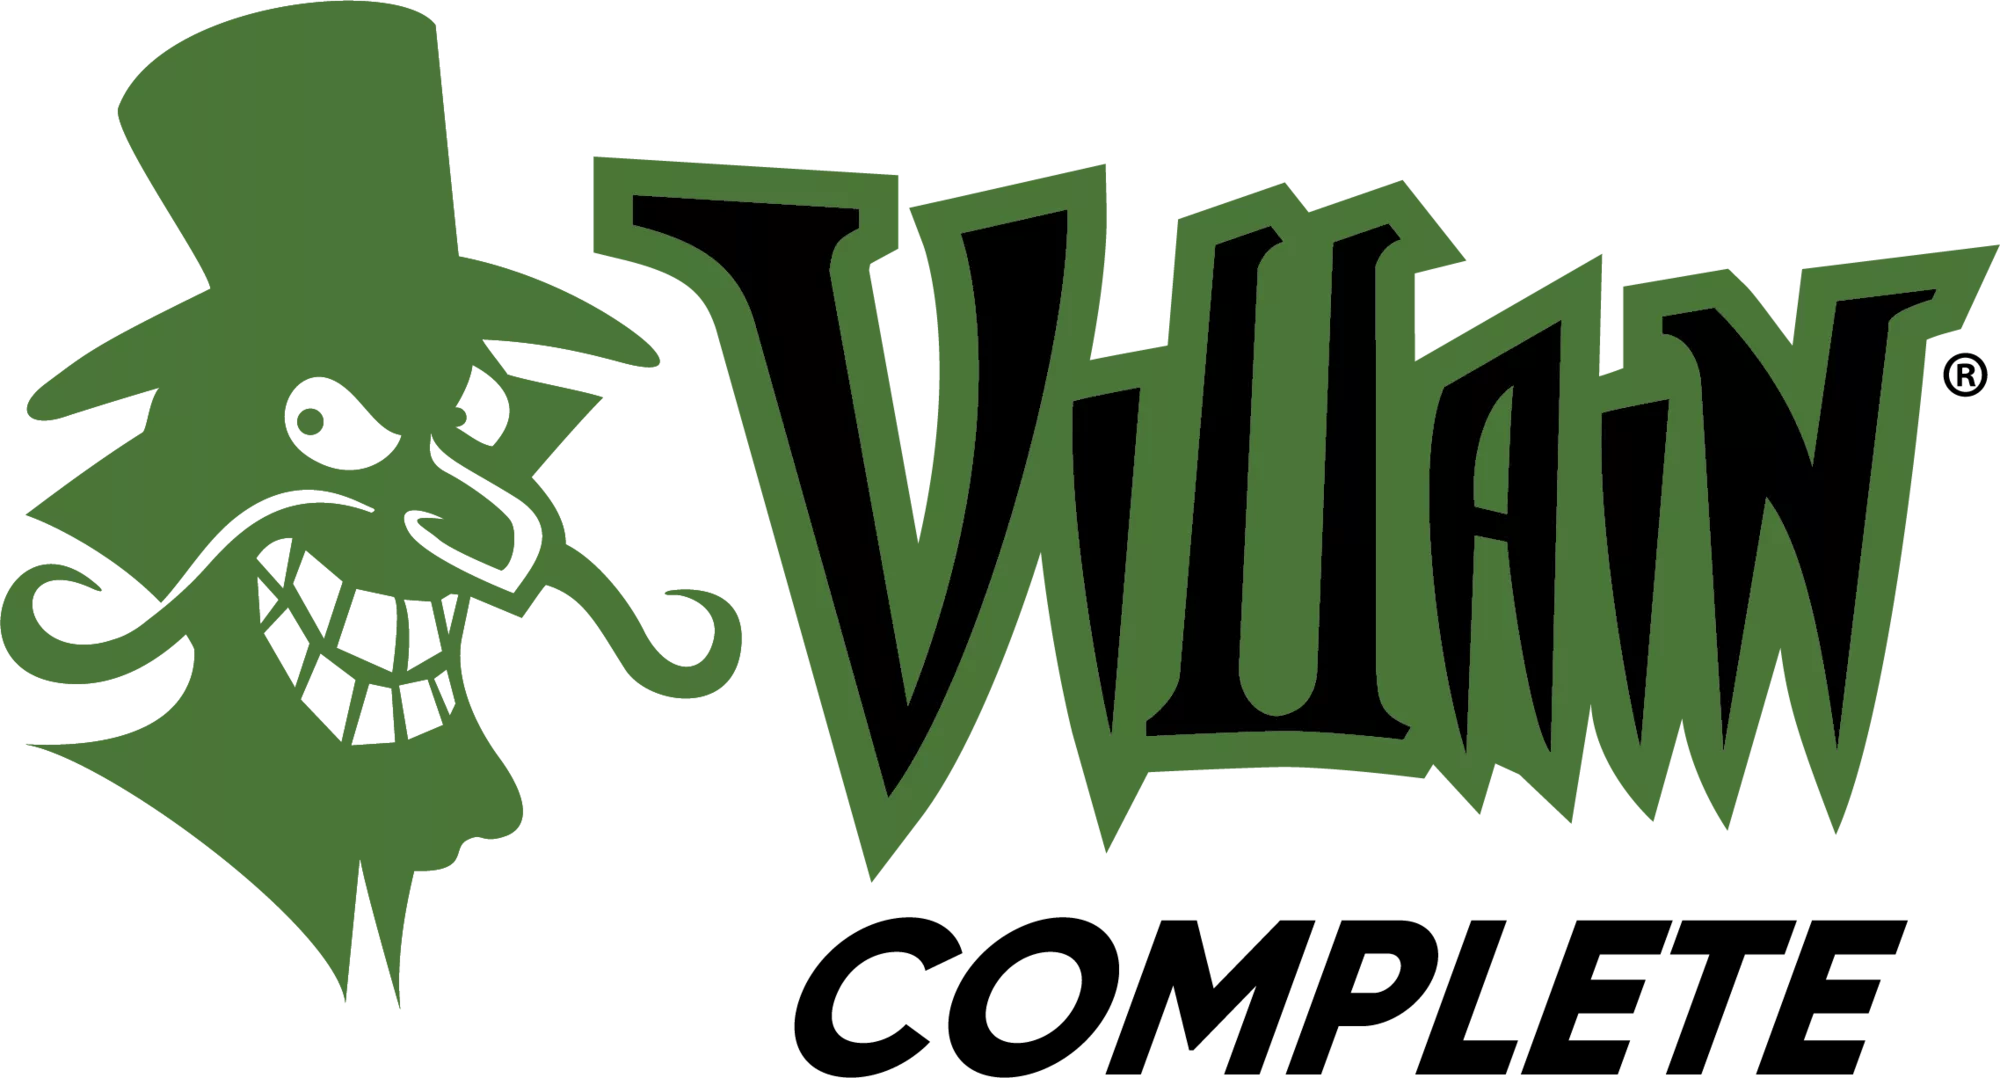 Villain Complete